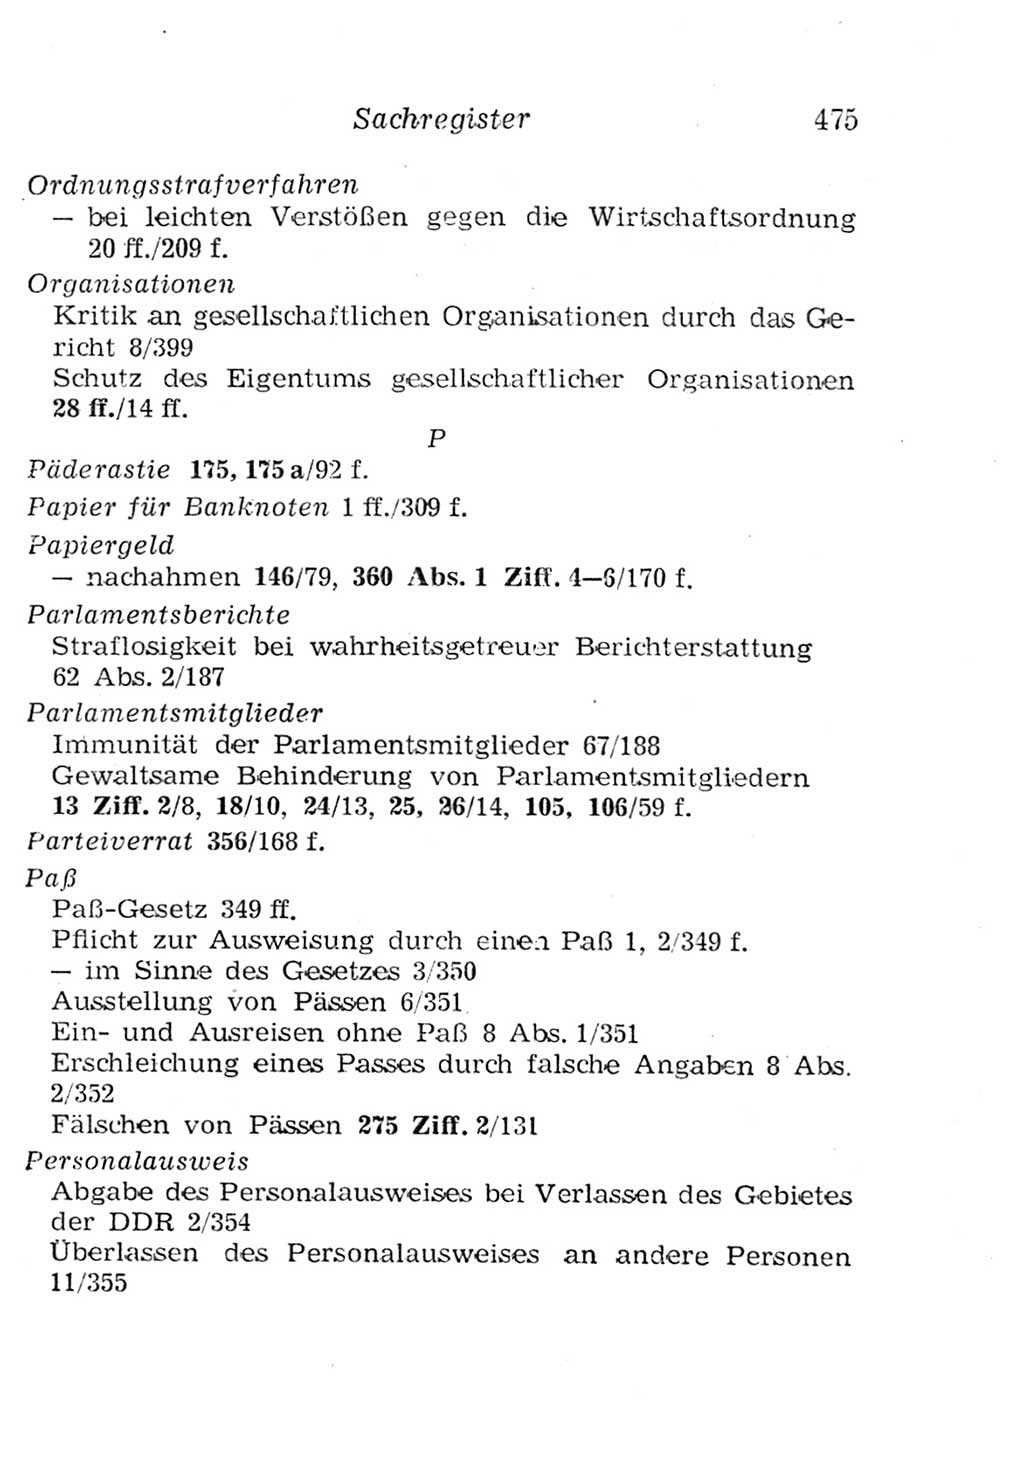 Strafgesetzbuch (StGB) und andere Strafgesetze [Deutsche Demokratische Republik (DDR)] 1957, Seite 475 (StGB Strafges. DDR 1957, S. 475)